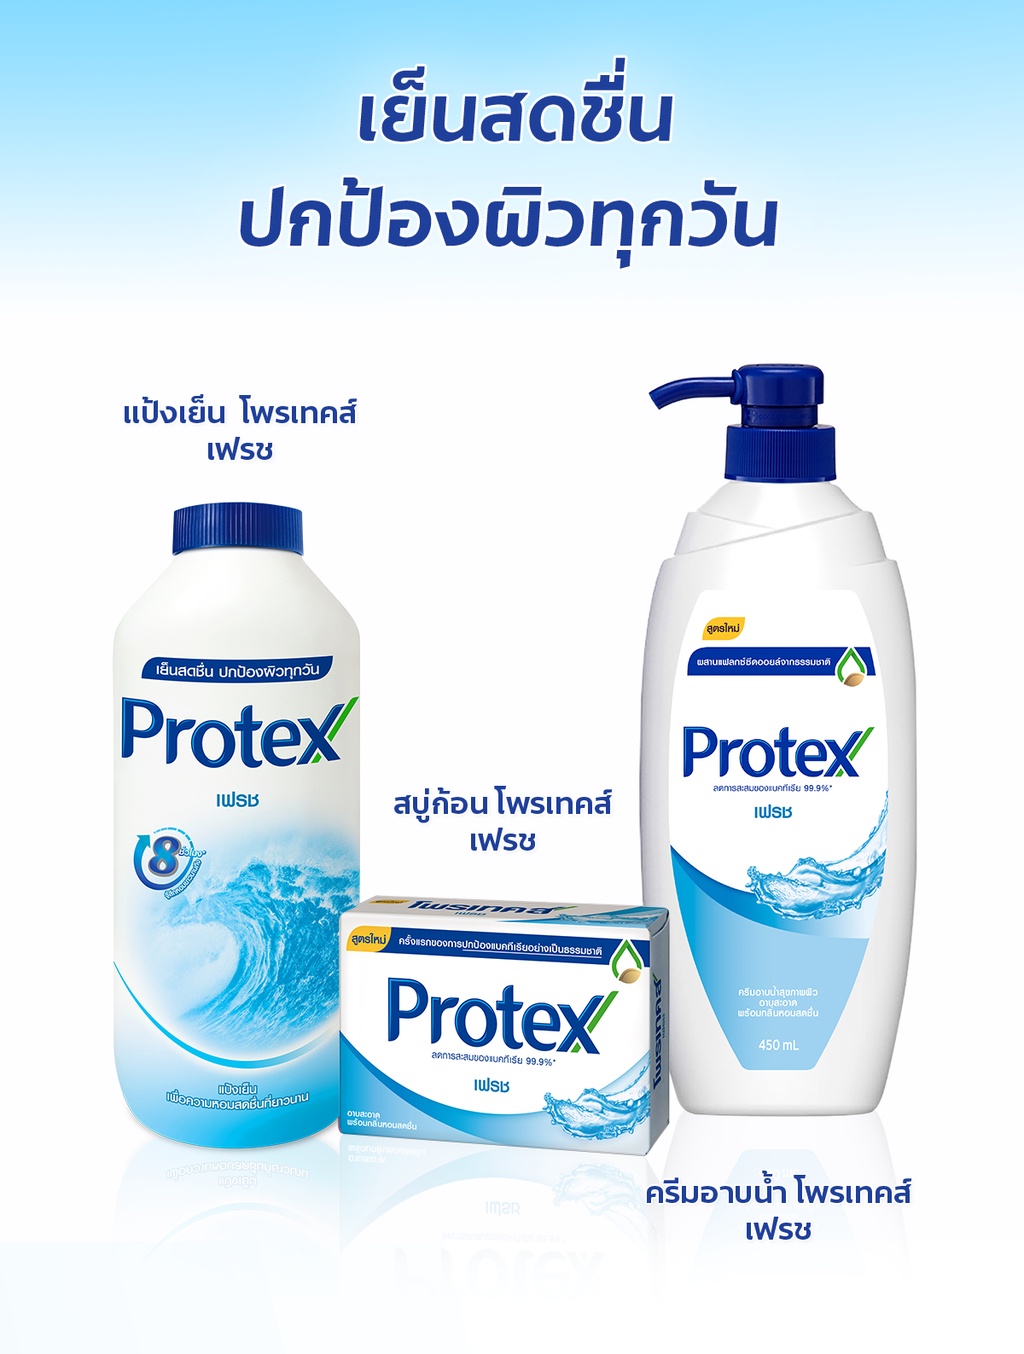 รูปภาพเพิ่มเติมเกี่ยวกับ Protex โพรเทคส์ เฟรช 280 กรัม รวม 2 ขวด (แป้งเย็น) Protex Talcum Powder Fresh 280g total 2 bottles